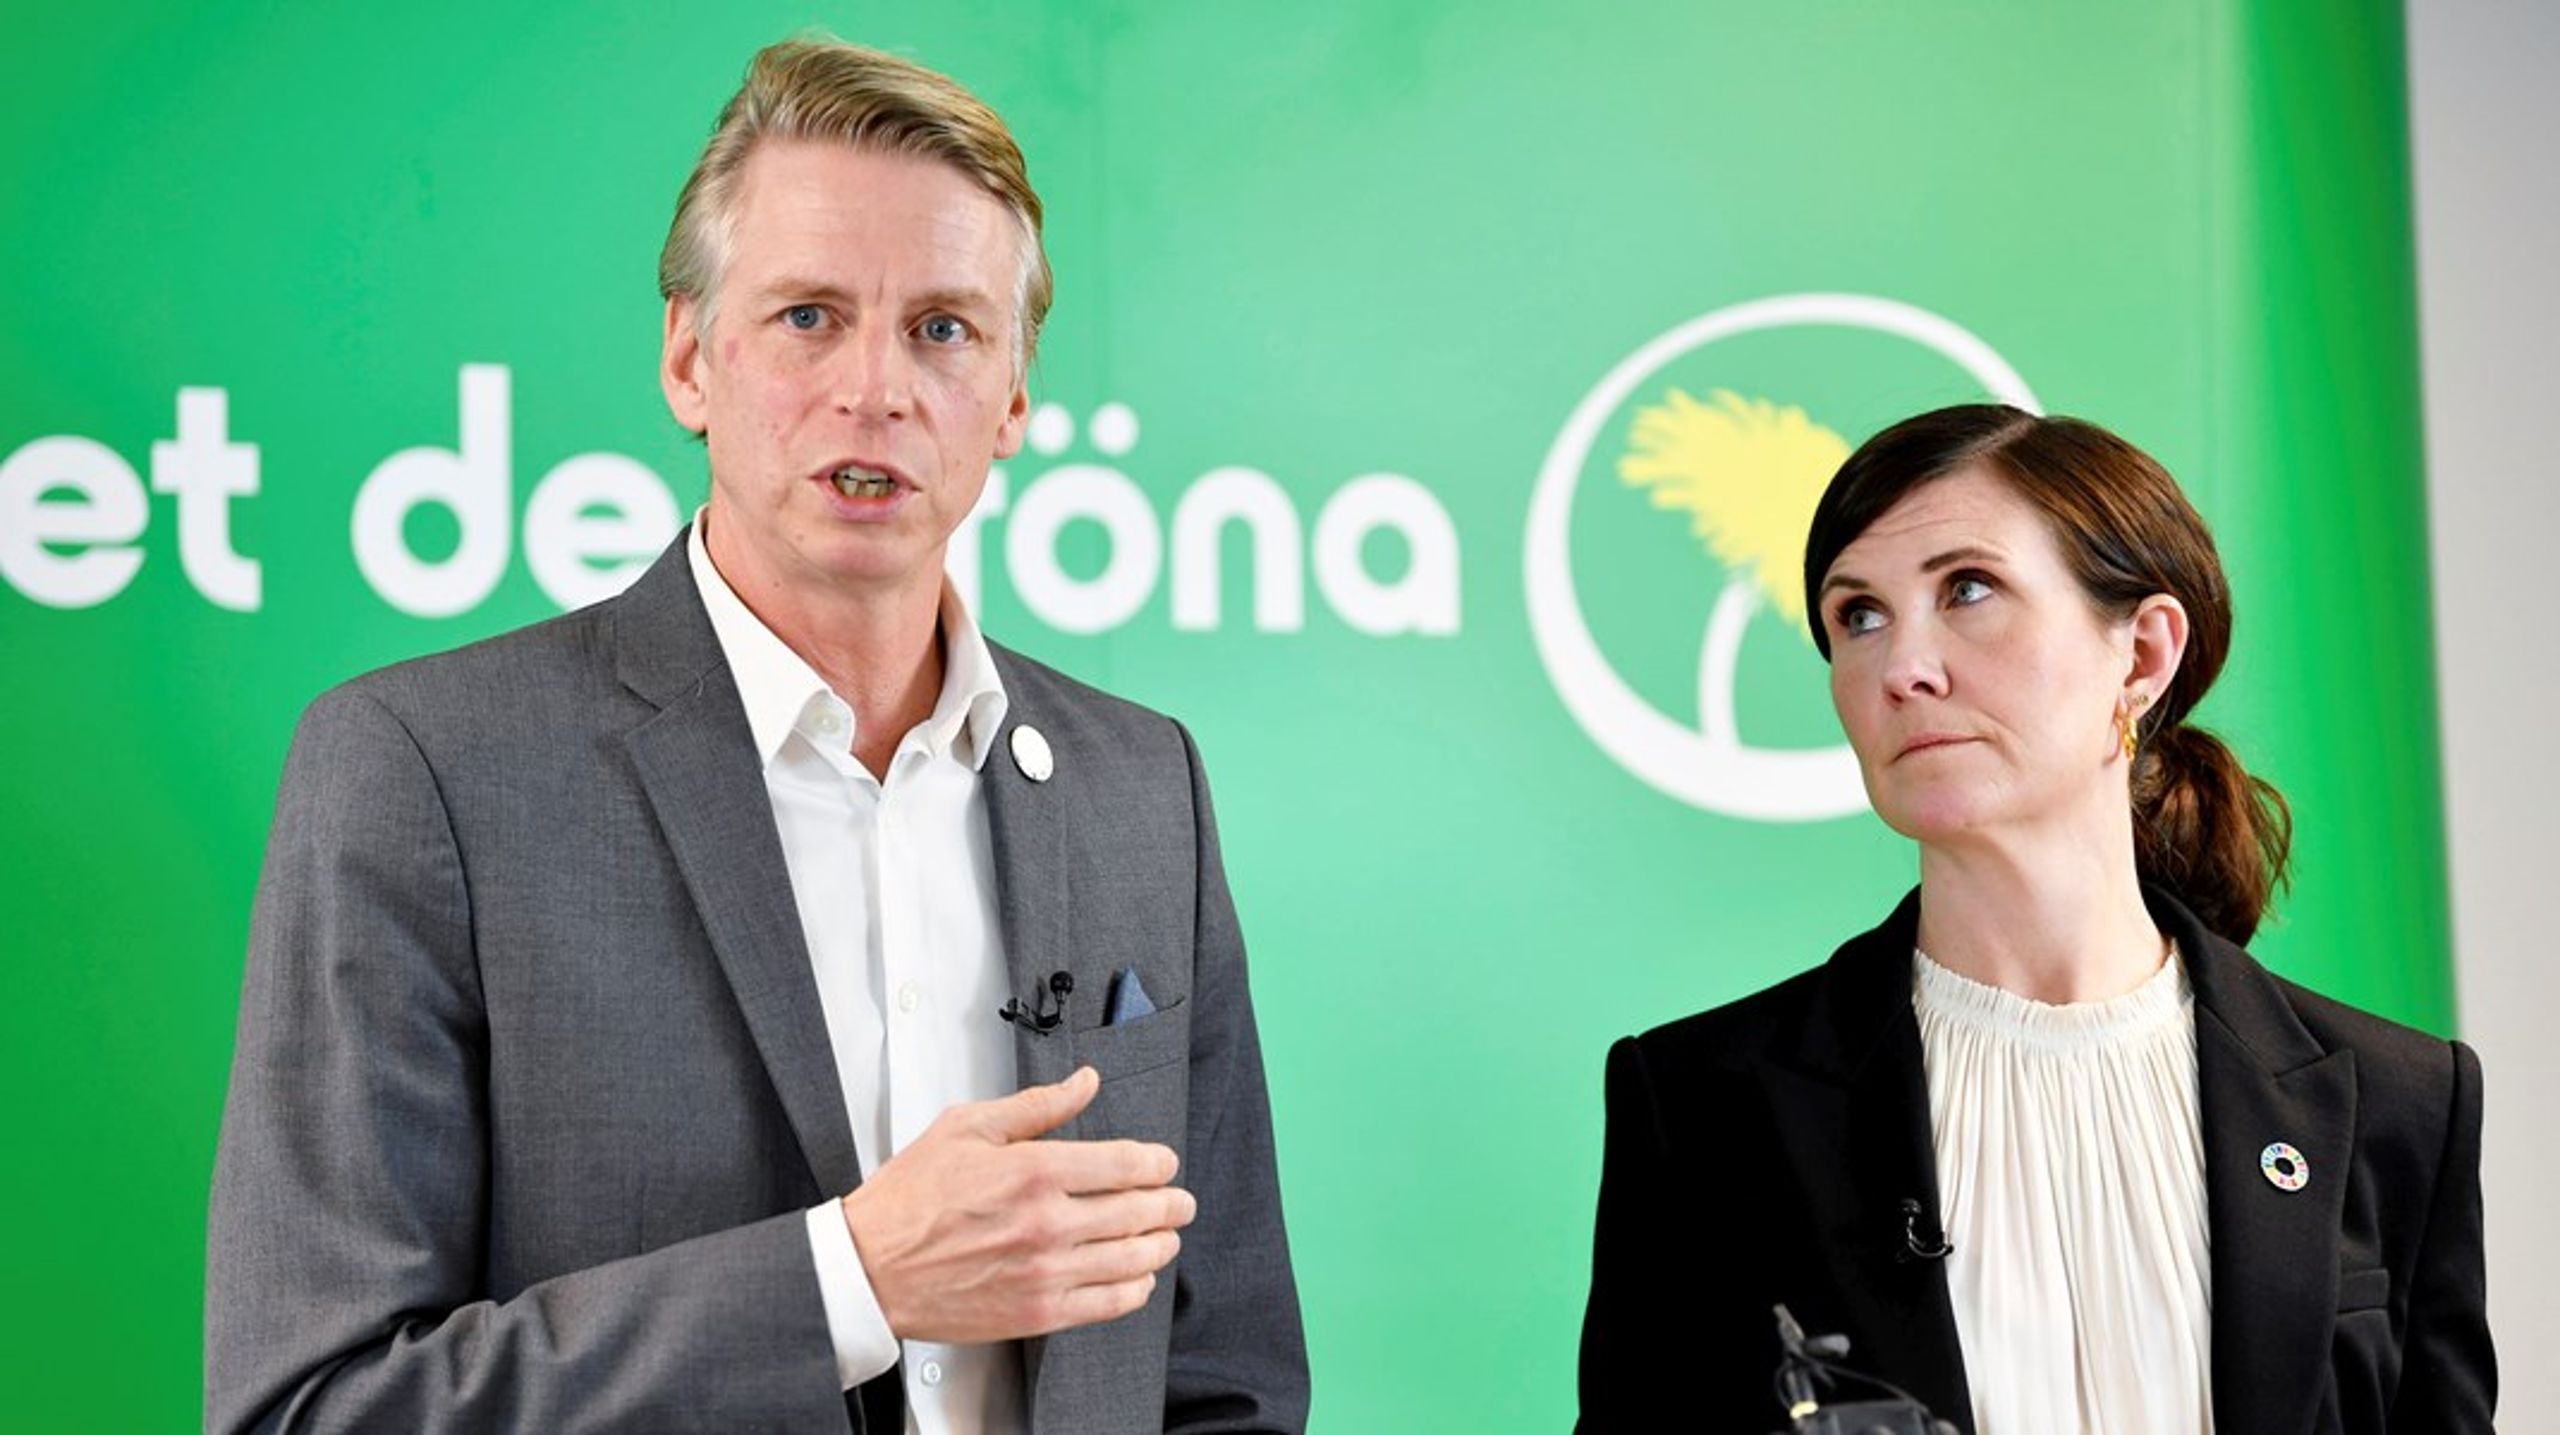 Miljöpartiets Per Bolund och Märta Stenevi. Att verka för ökad bildning hos folket har aldrig varit Miljöpartiets starka sida, skriver debattörerna.&nbsp;